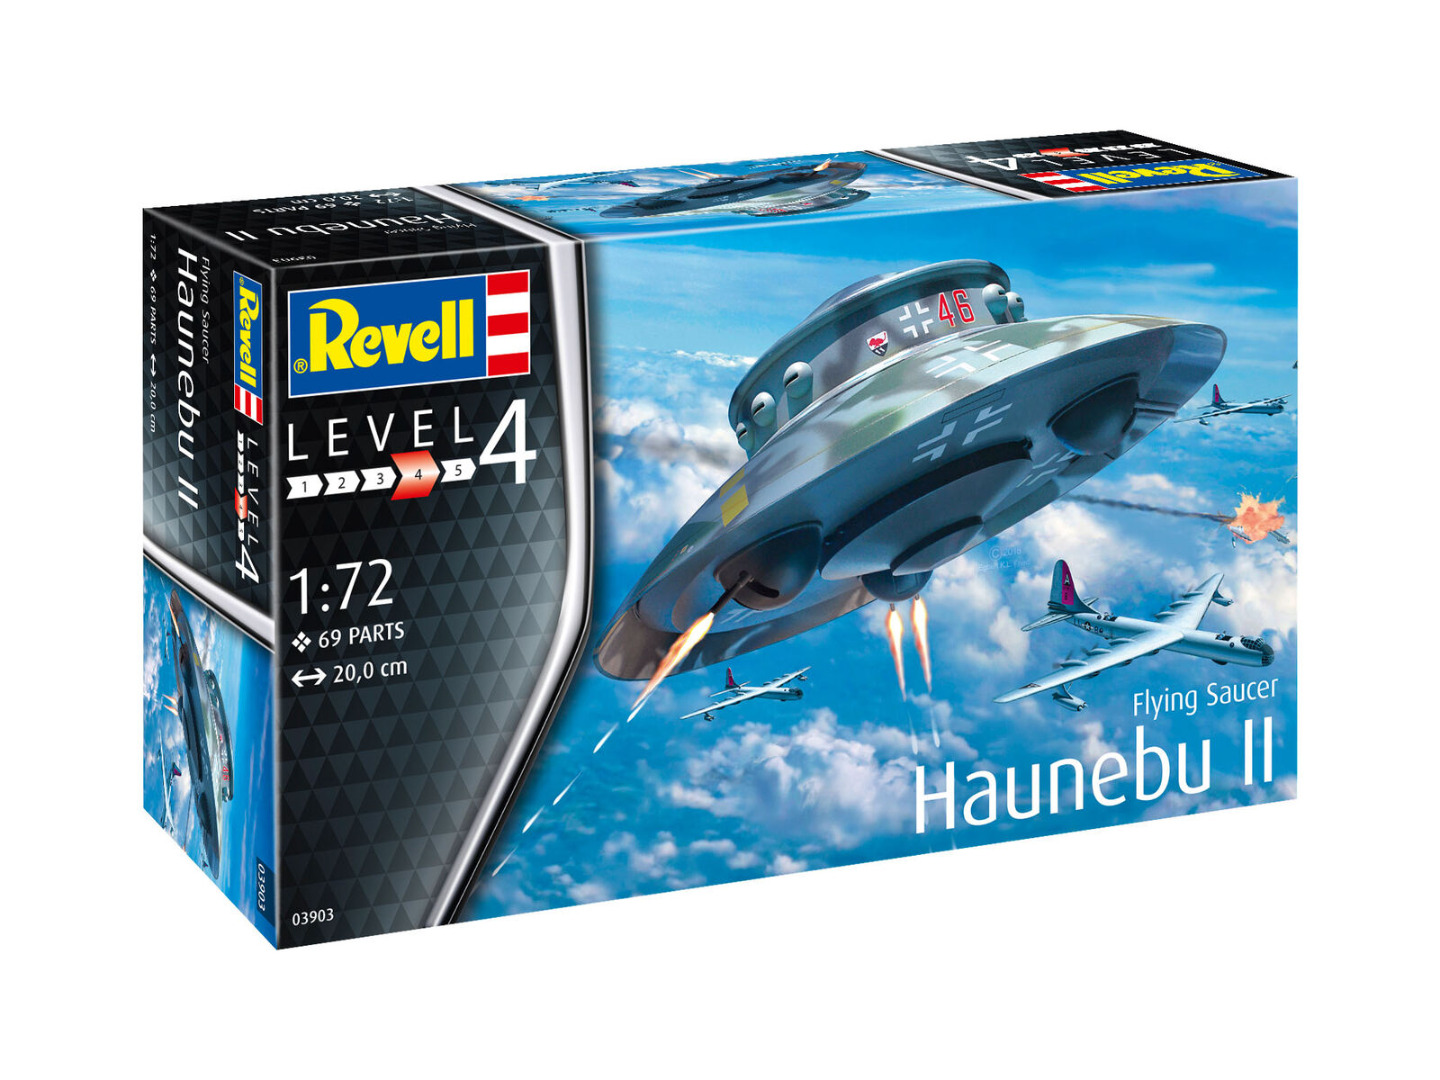 Revell Model Kit Flying Saucer Haunebu II Scale 1:72